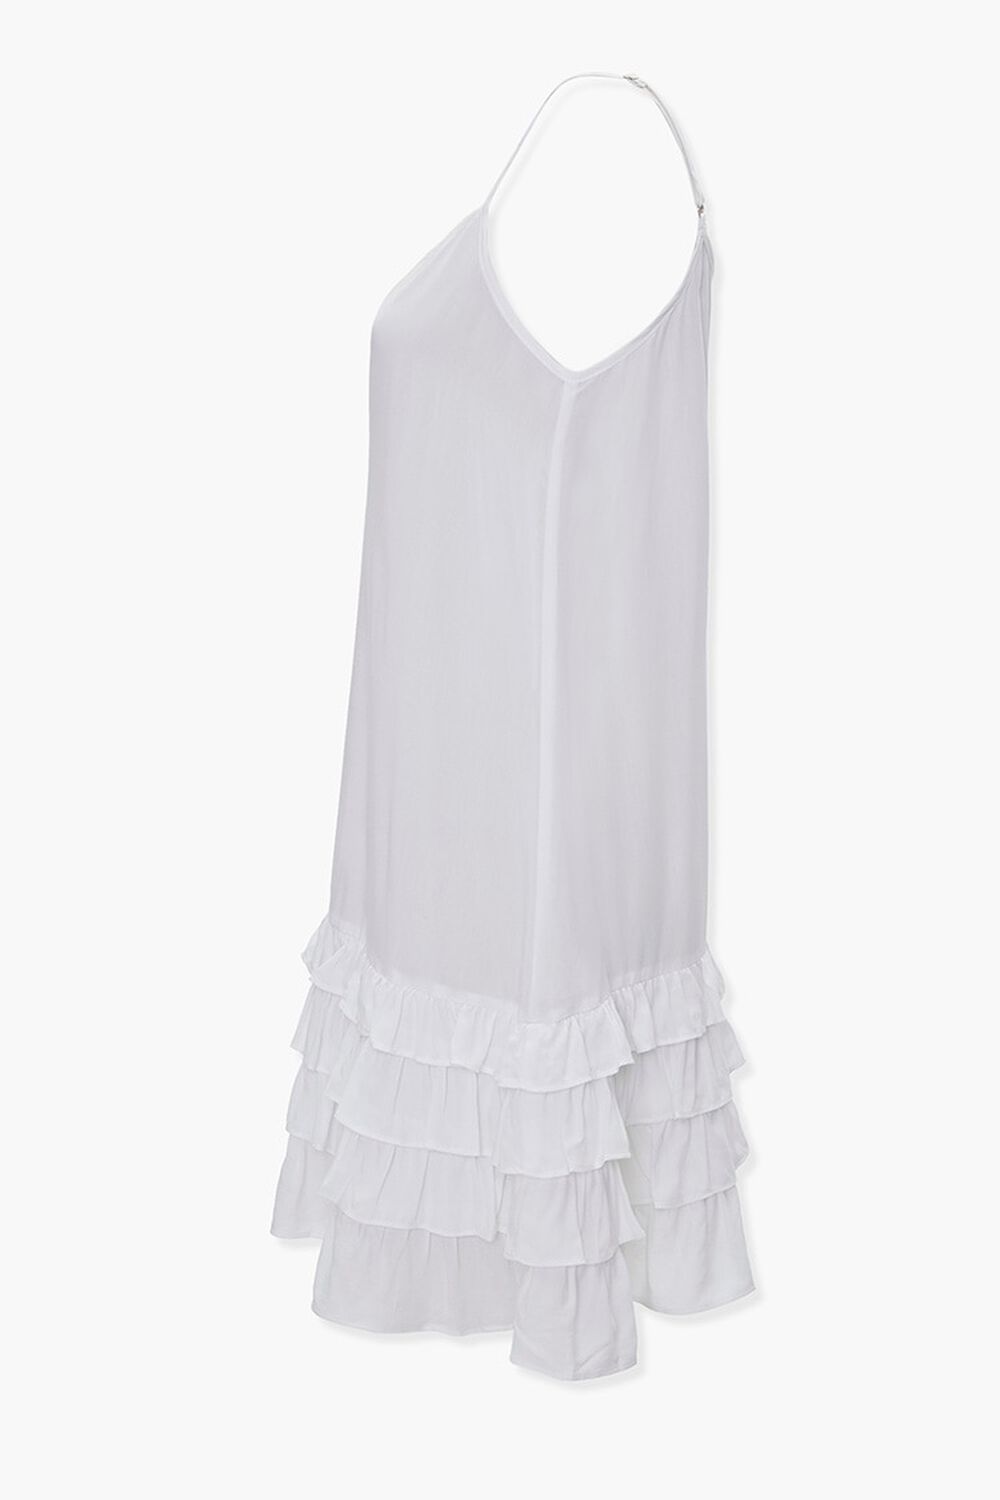 WHITE Tiered Ruffle Shift Dress, image 2